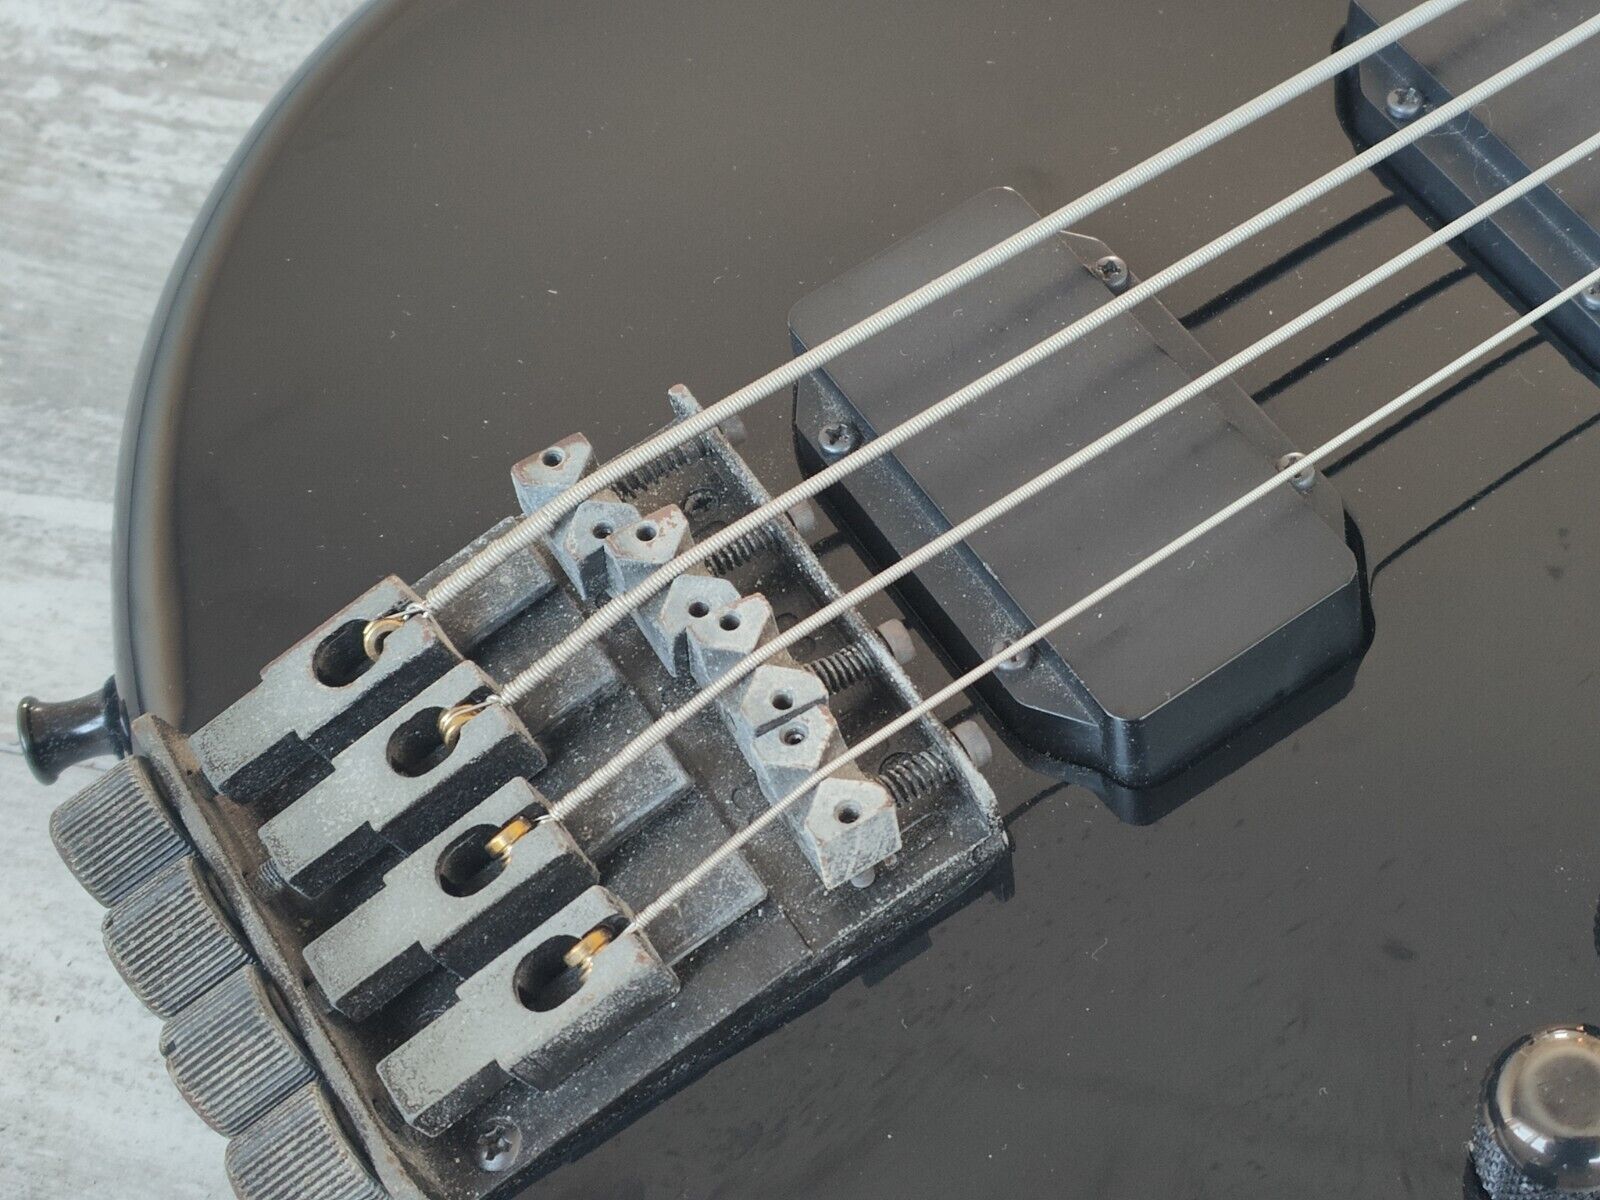 1980's Yamaha Japan MBX Motion B Headless Medium Scale Bass (Black)